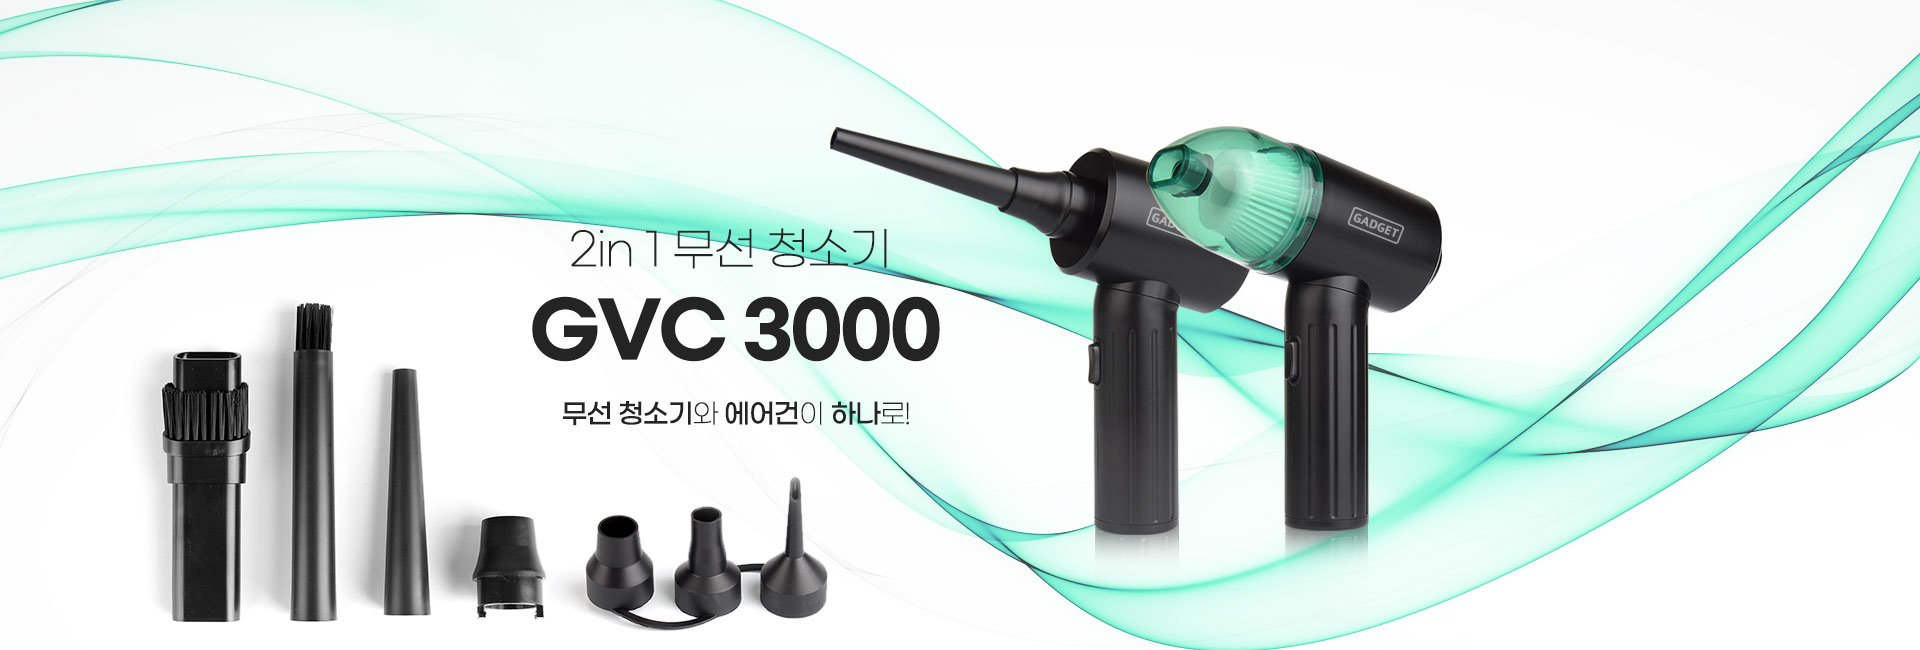 GCV-3000